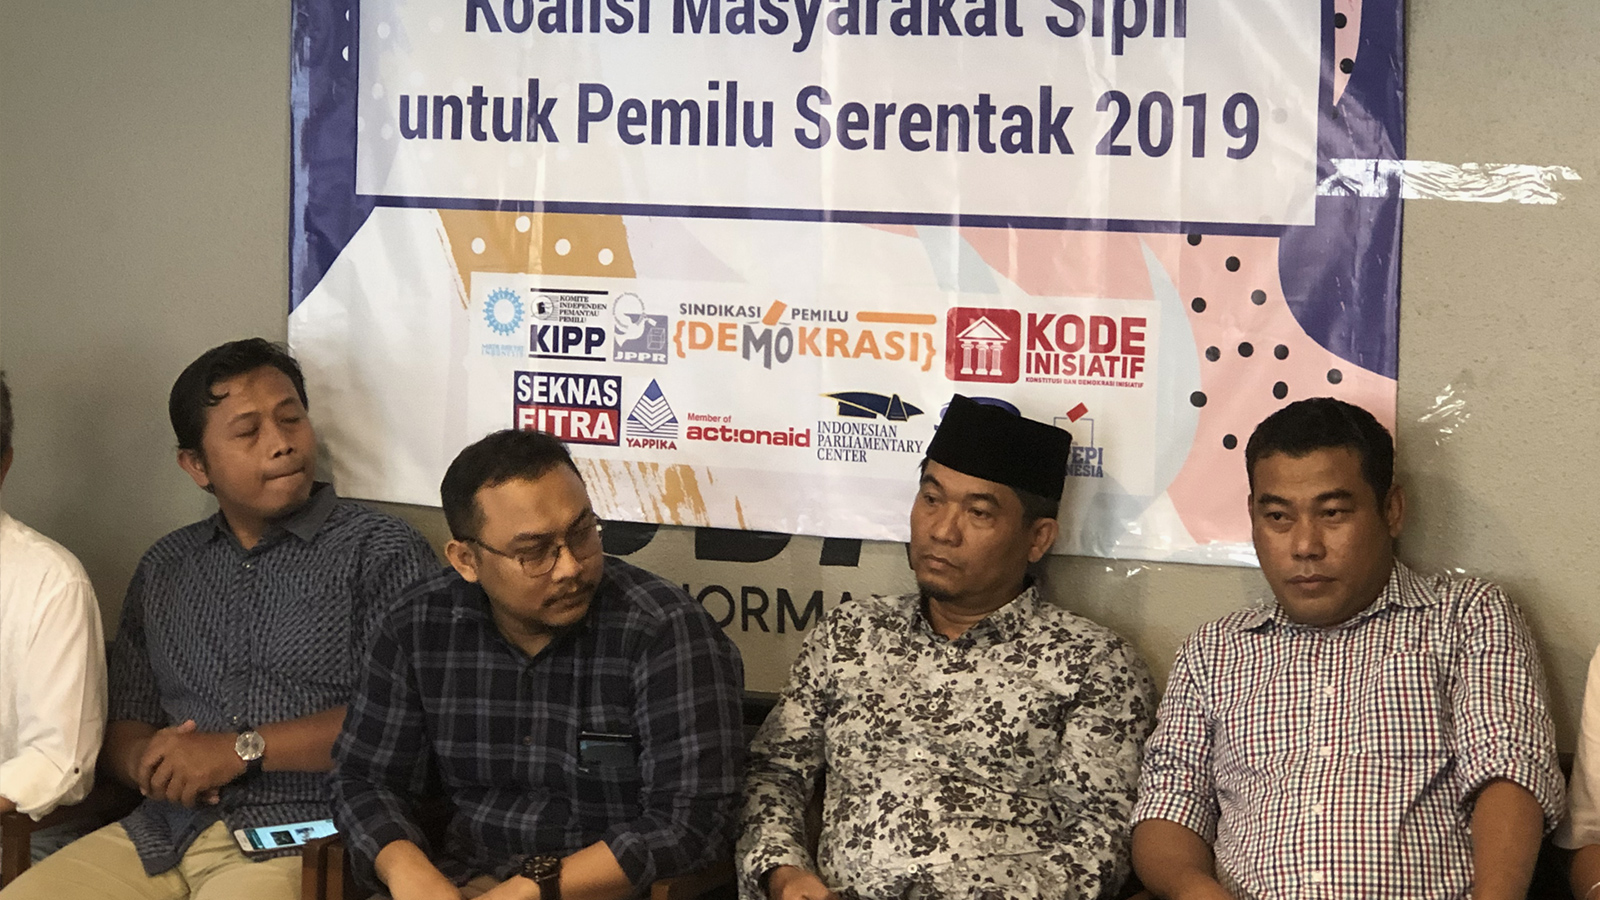 ‪ممثلون عن المجتمع المدني الإندونيسي وجهوا انتقادات شديدة للجنة الانتخابات واتهموها بالانحياز لصالح الرئيس جوكو‬ (الجزيرة)